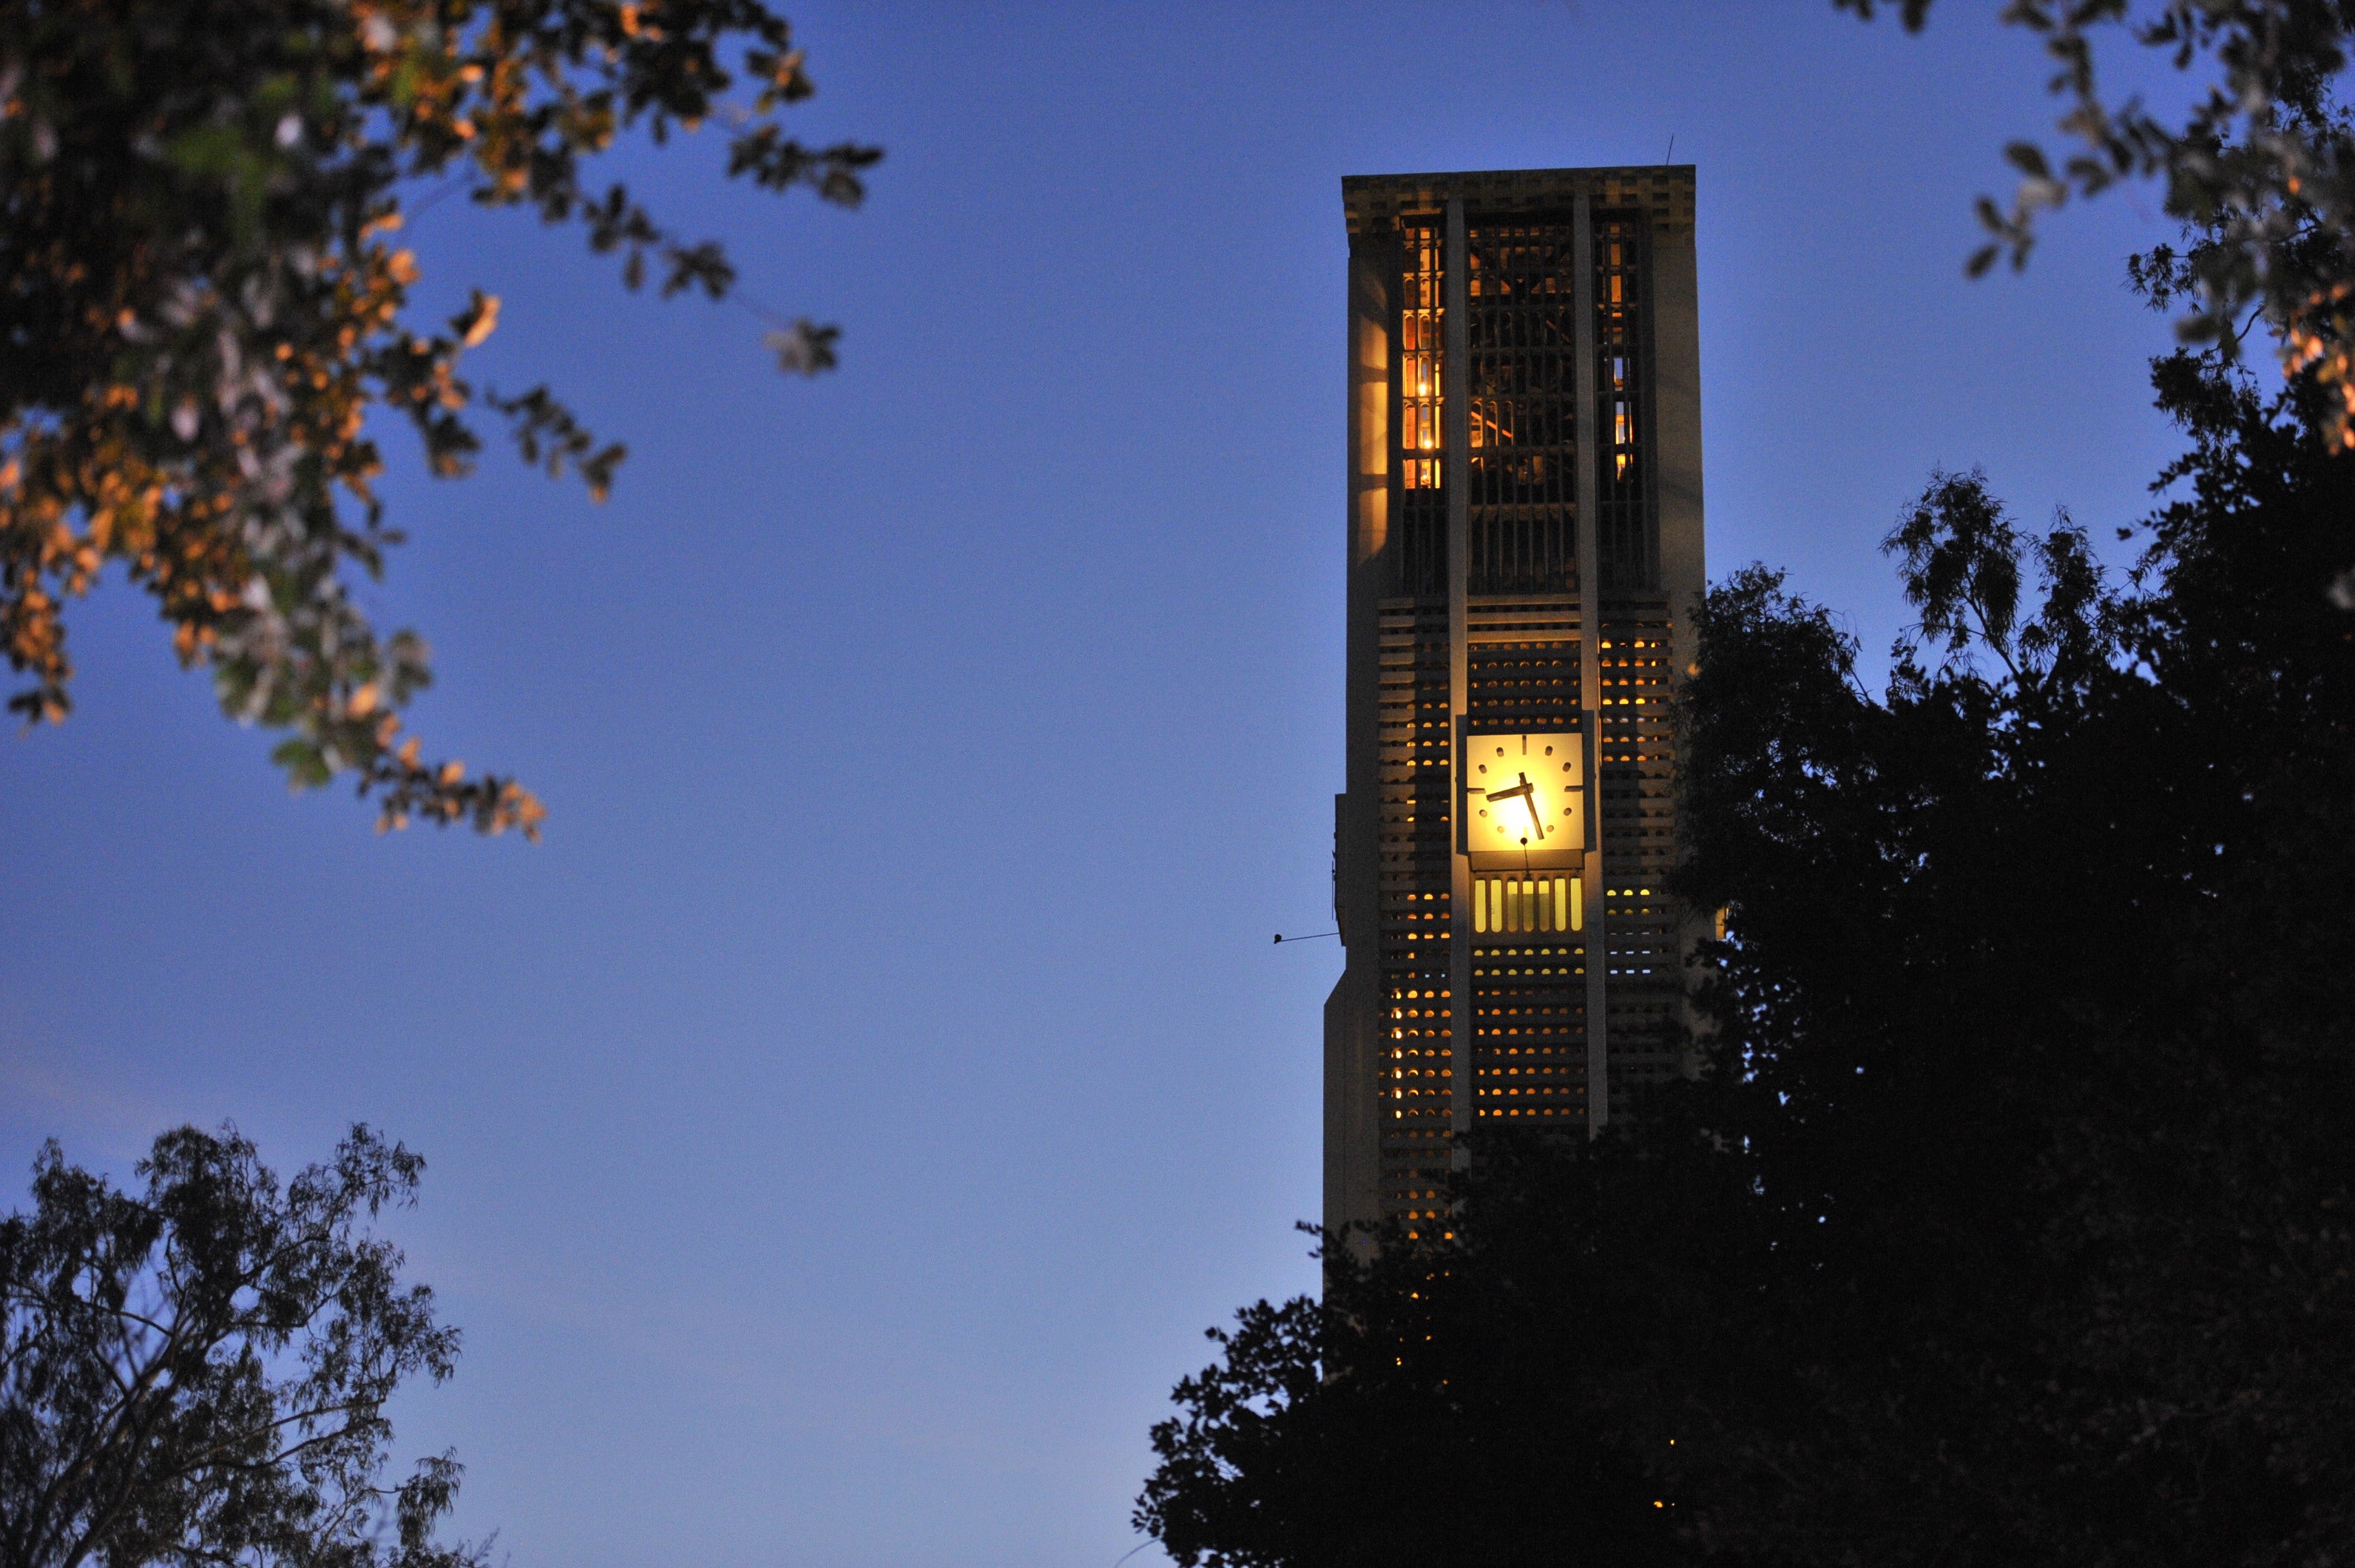 UCR belltower at night